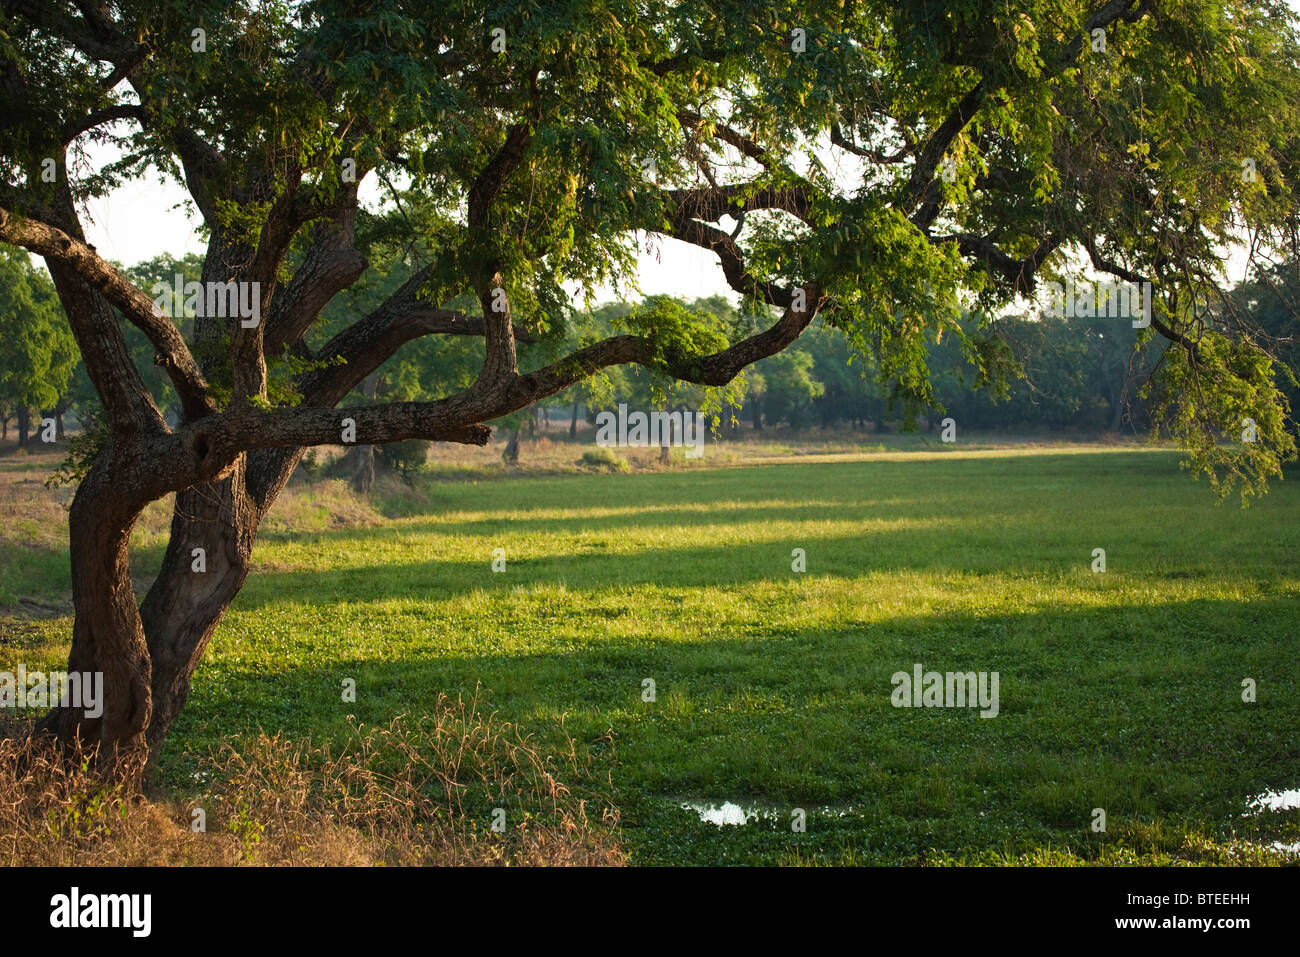 Vue panoramique d'un seul arbre albida sur le bord d'un pan de saison couverte de végétation luxuriante élodée. Banque D'Images